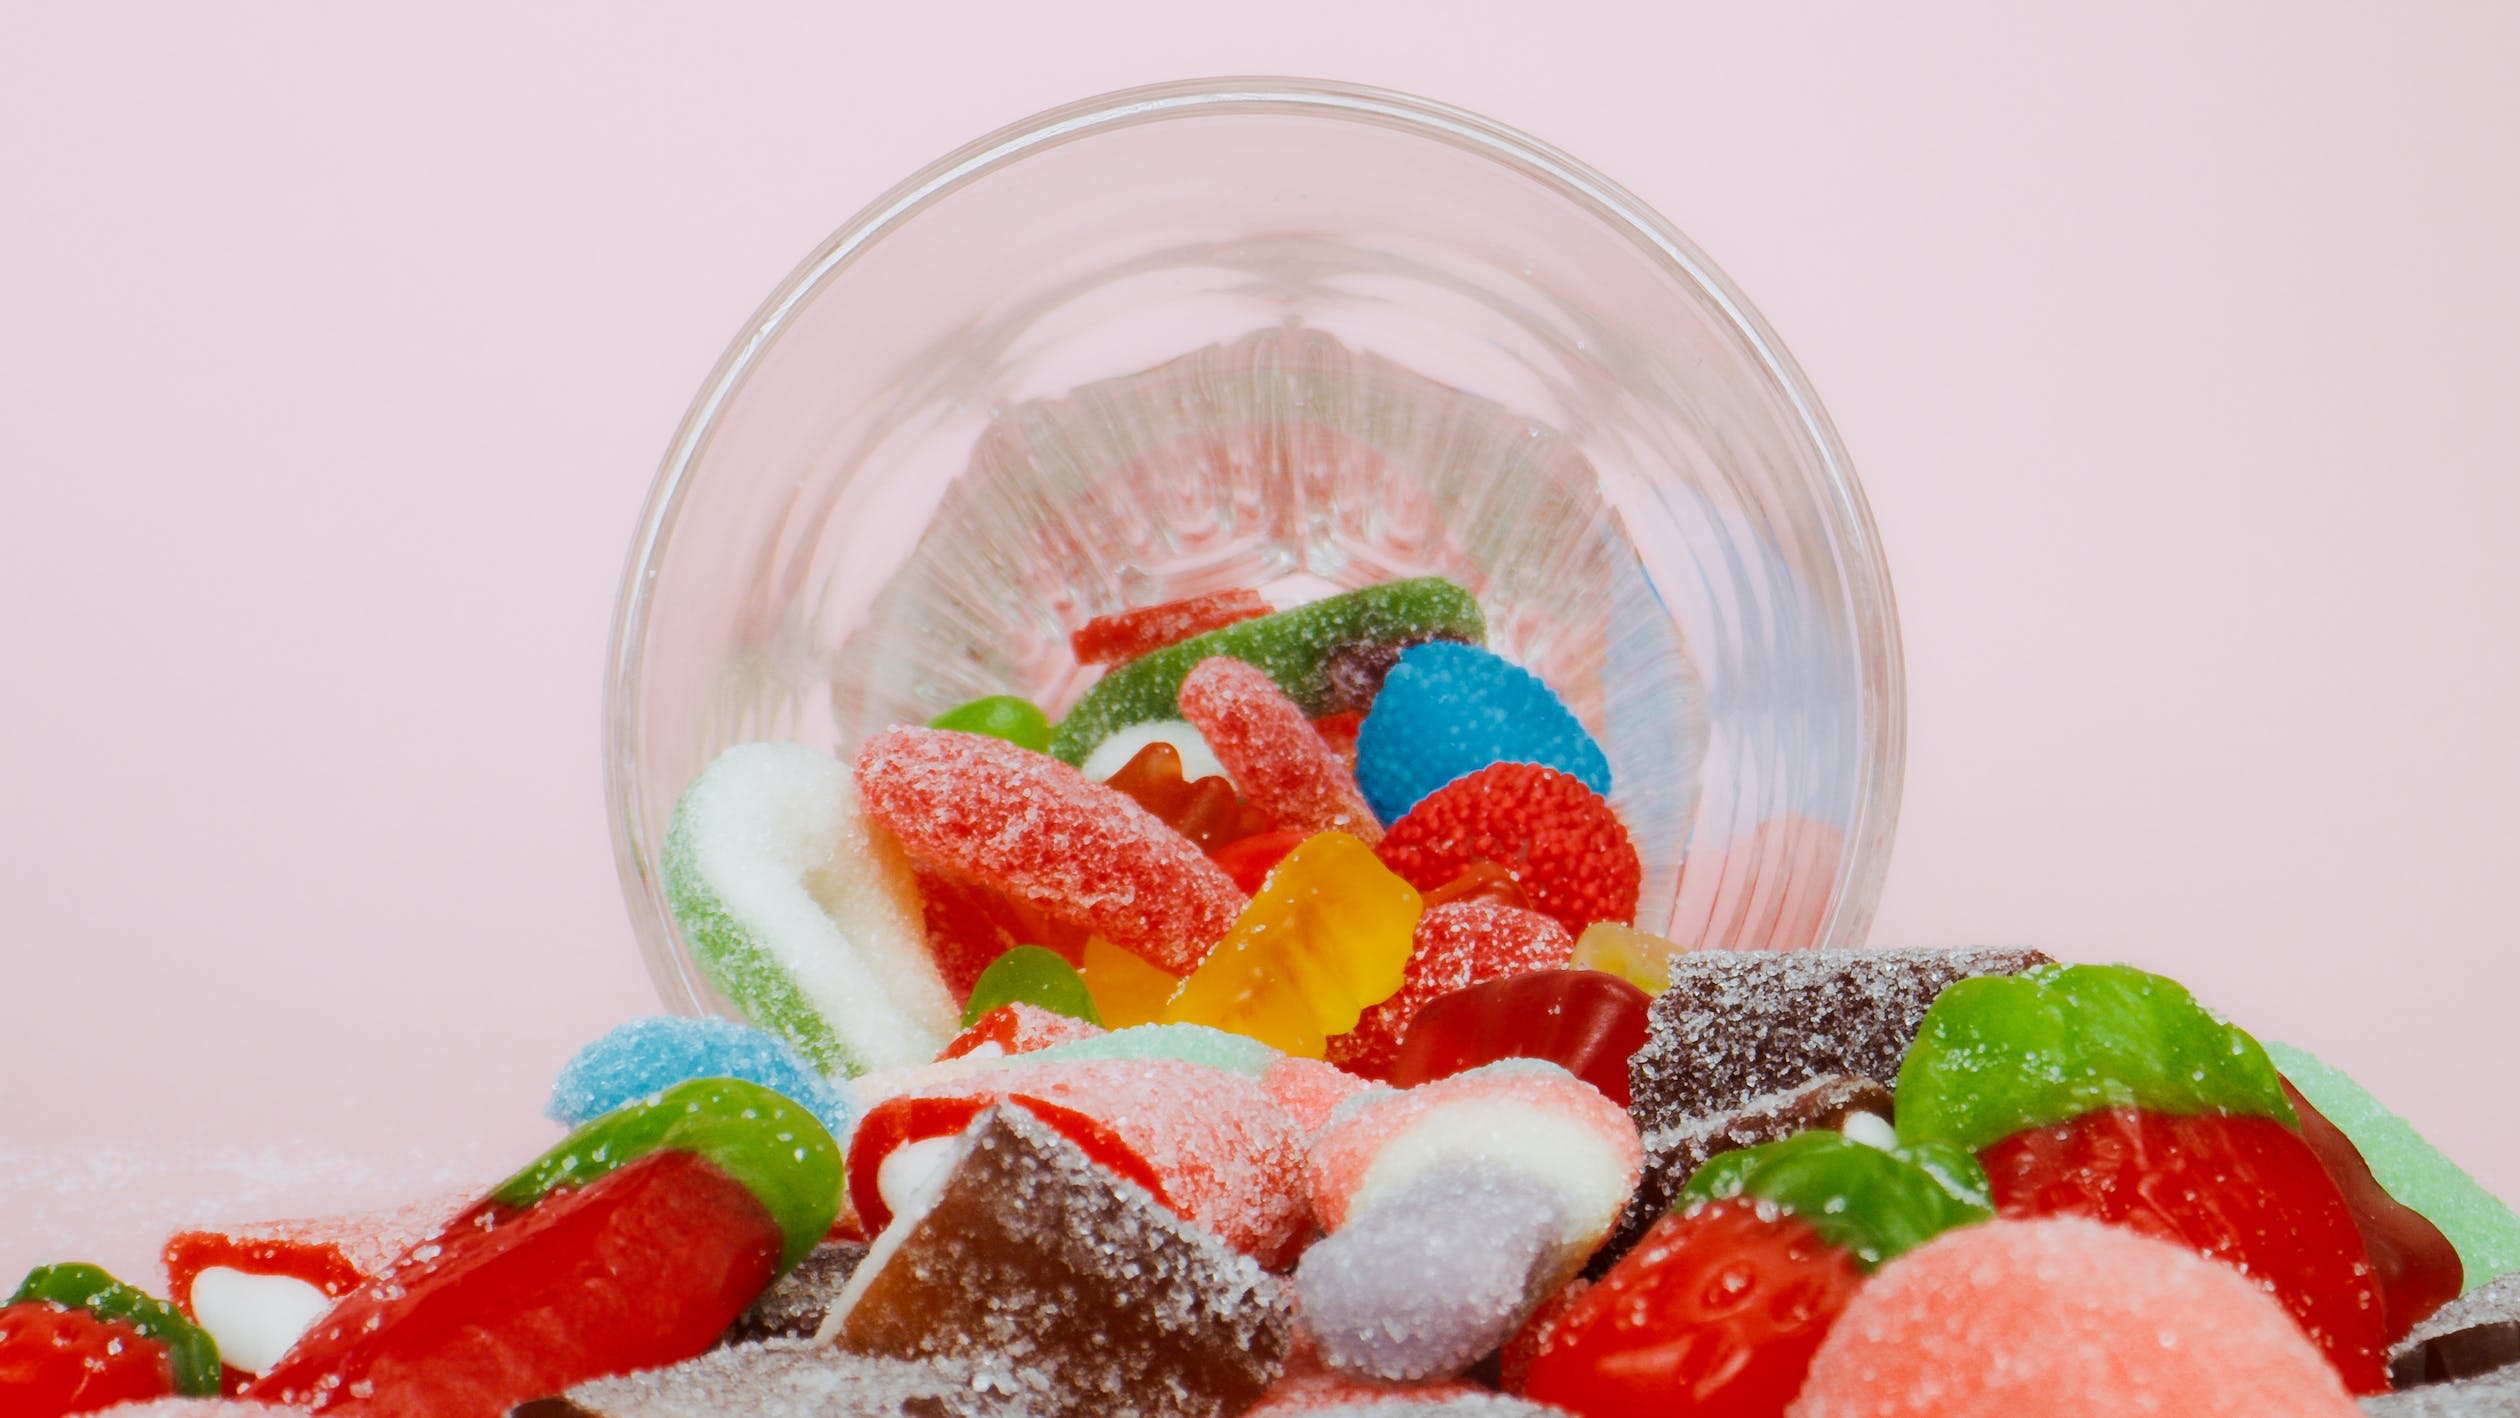 Surtido de deliciosos dulces en un recipiente de plástico transparente